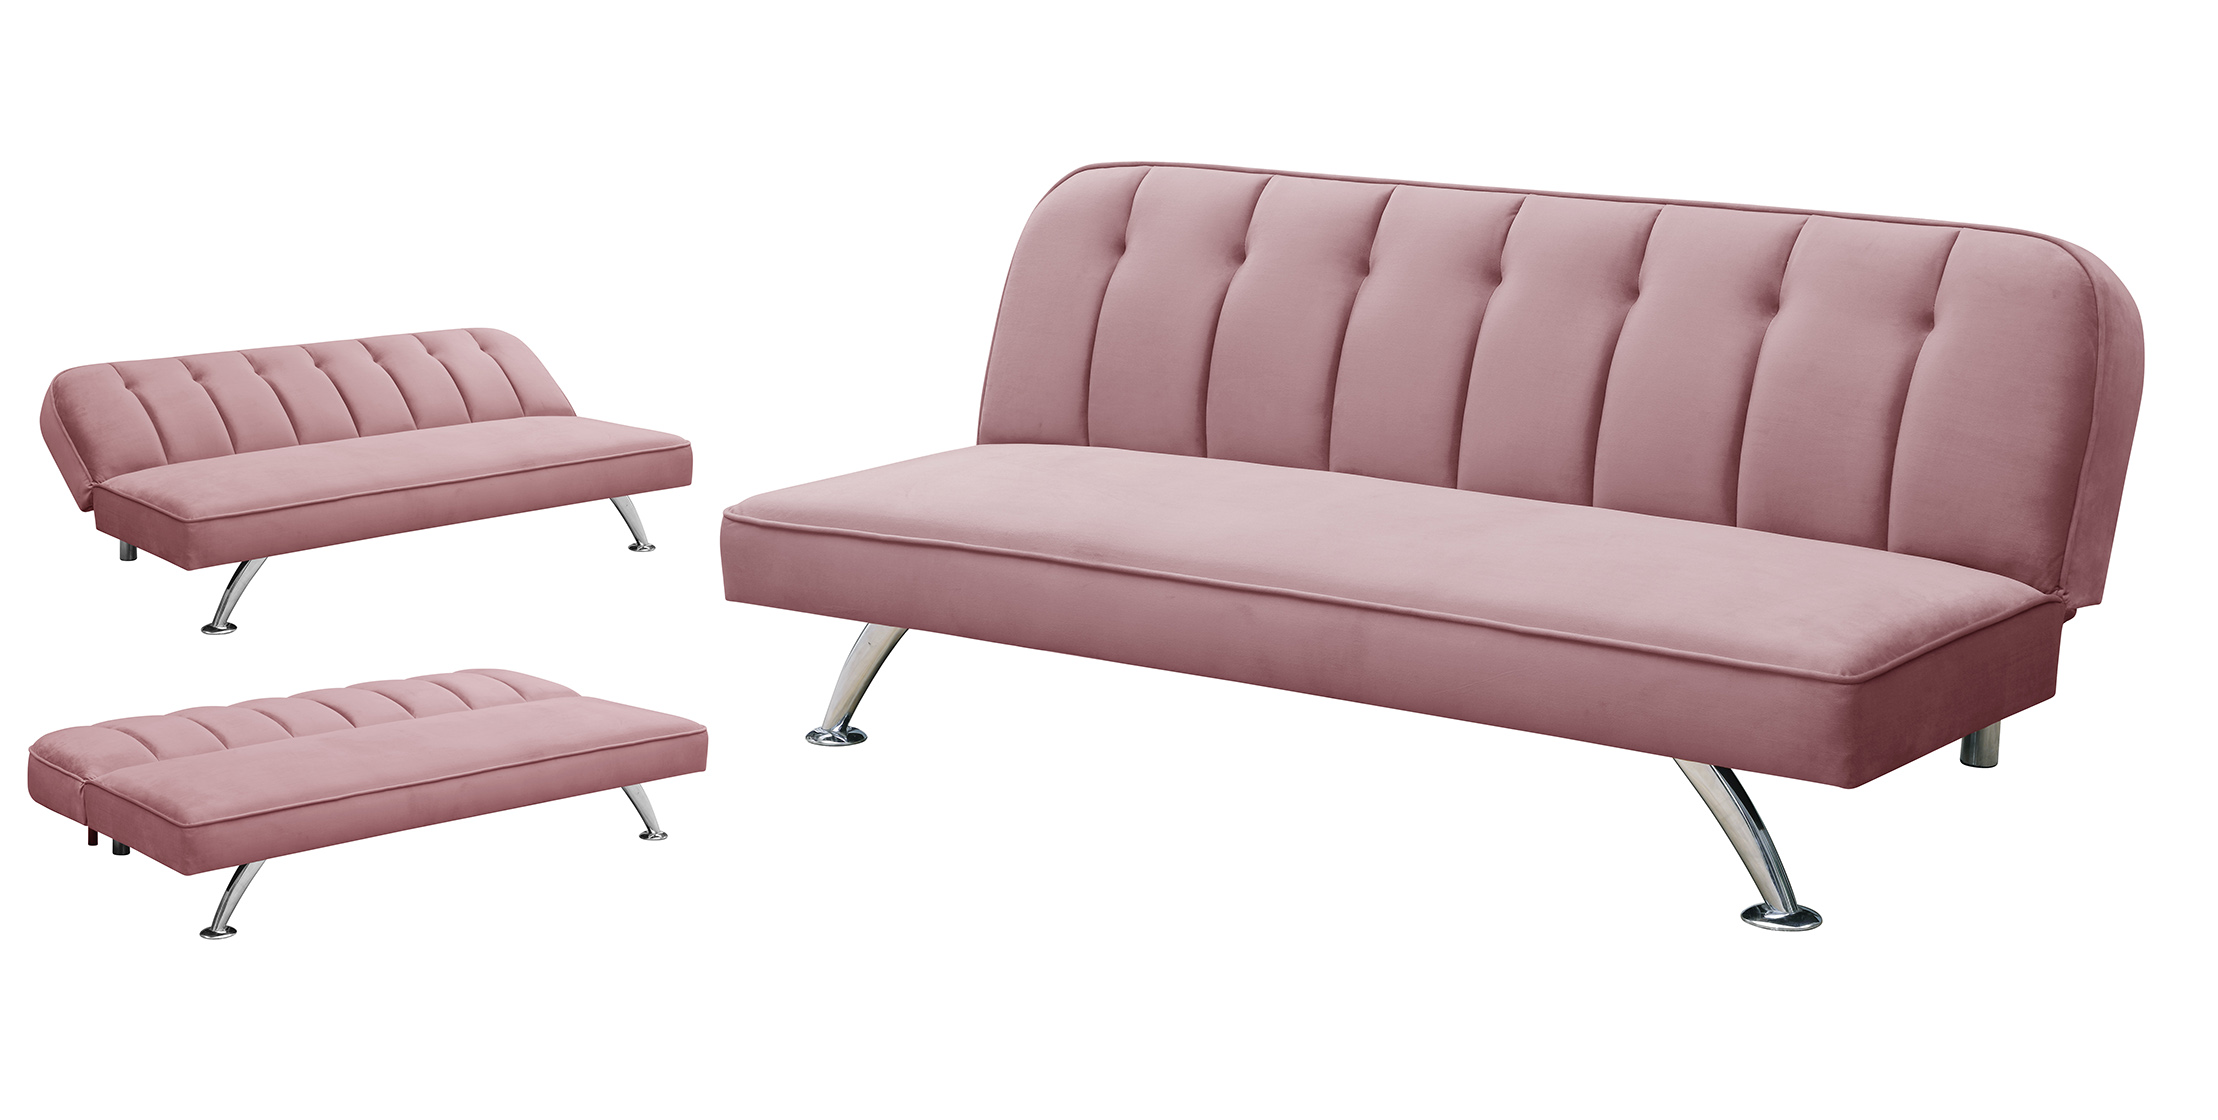 cheap pink sofa bed